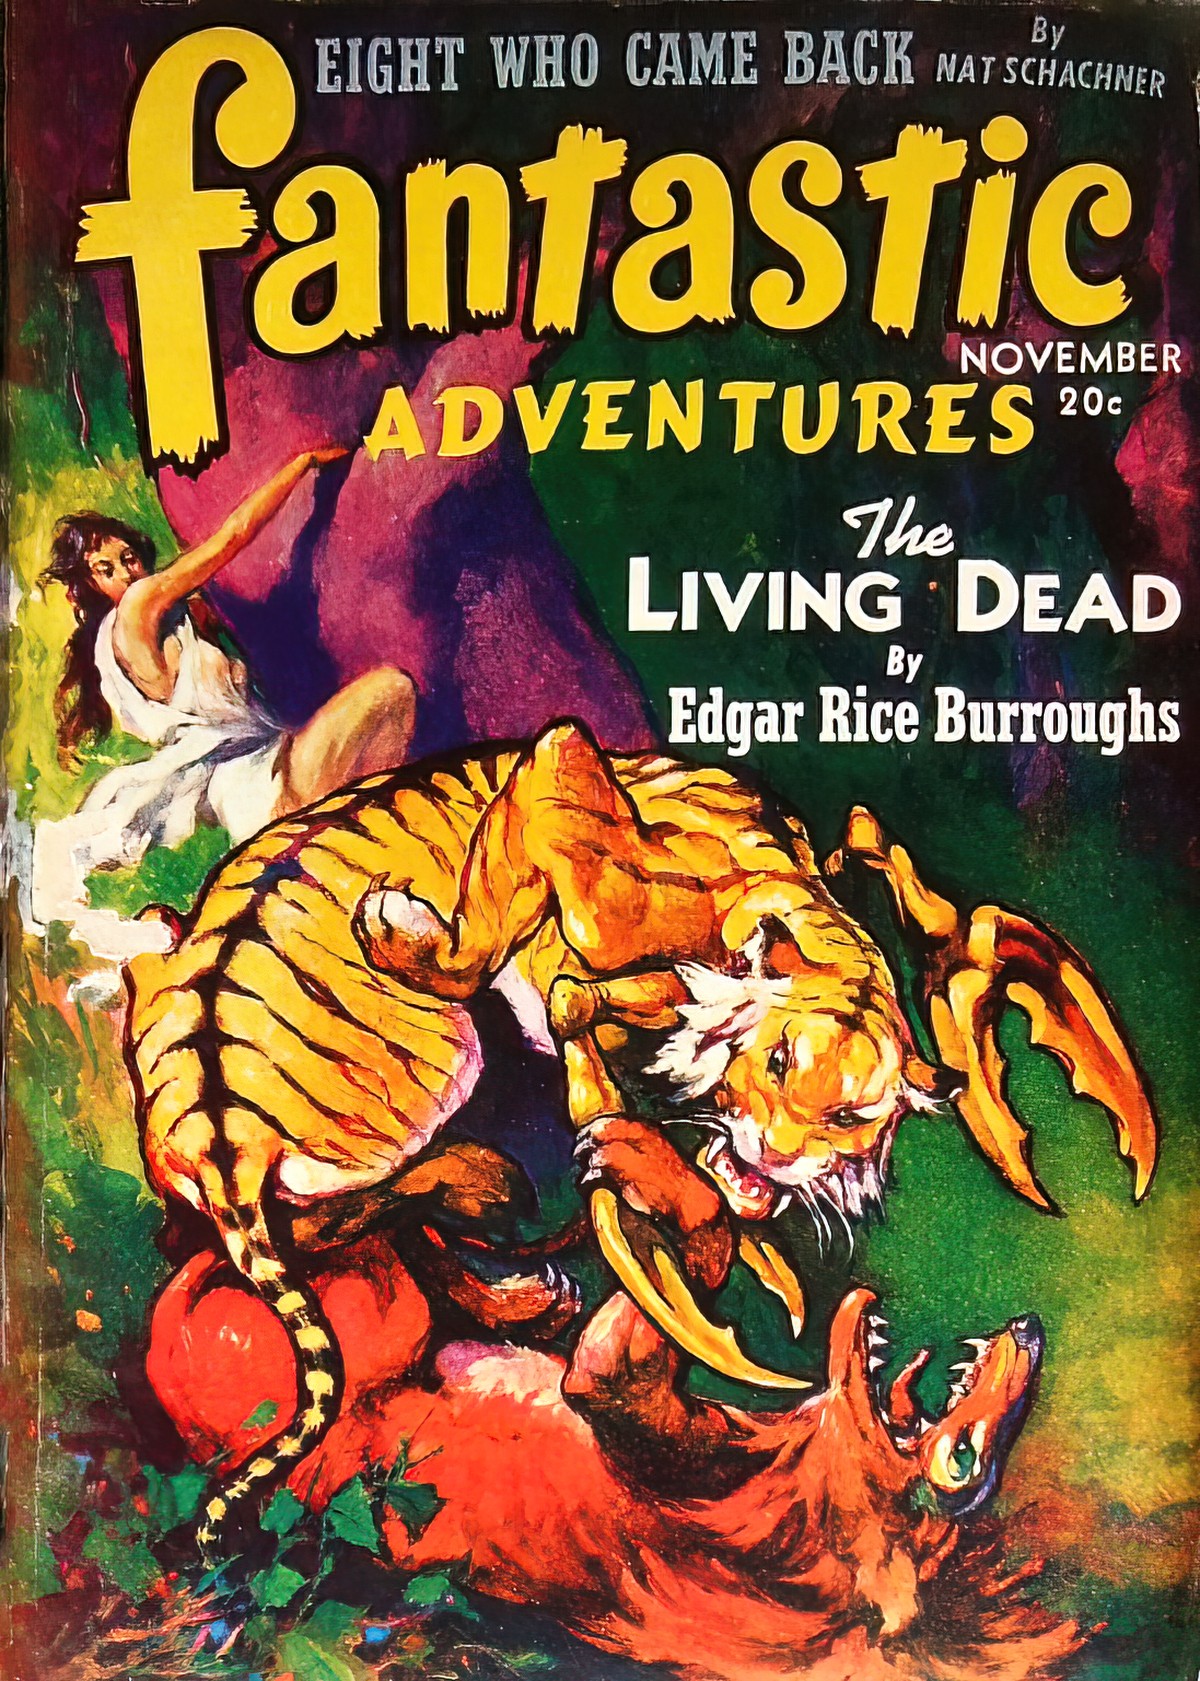 Fantastic Adventures for November 1941